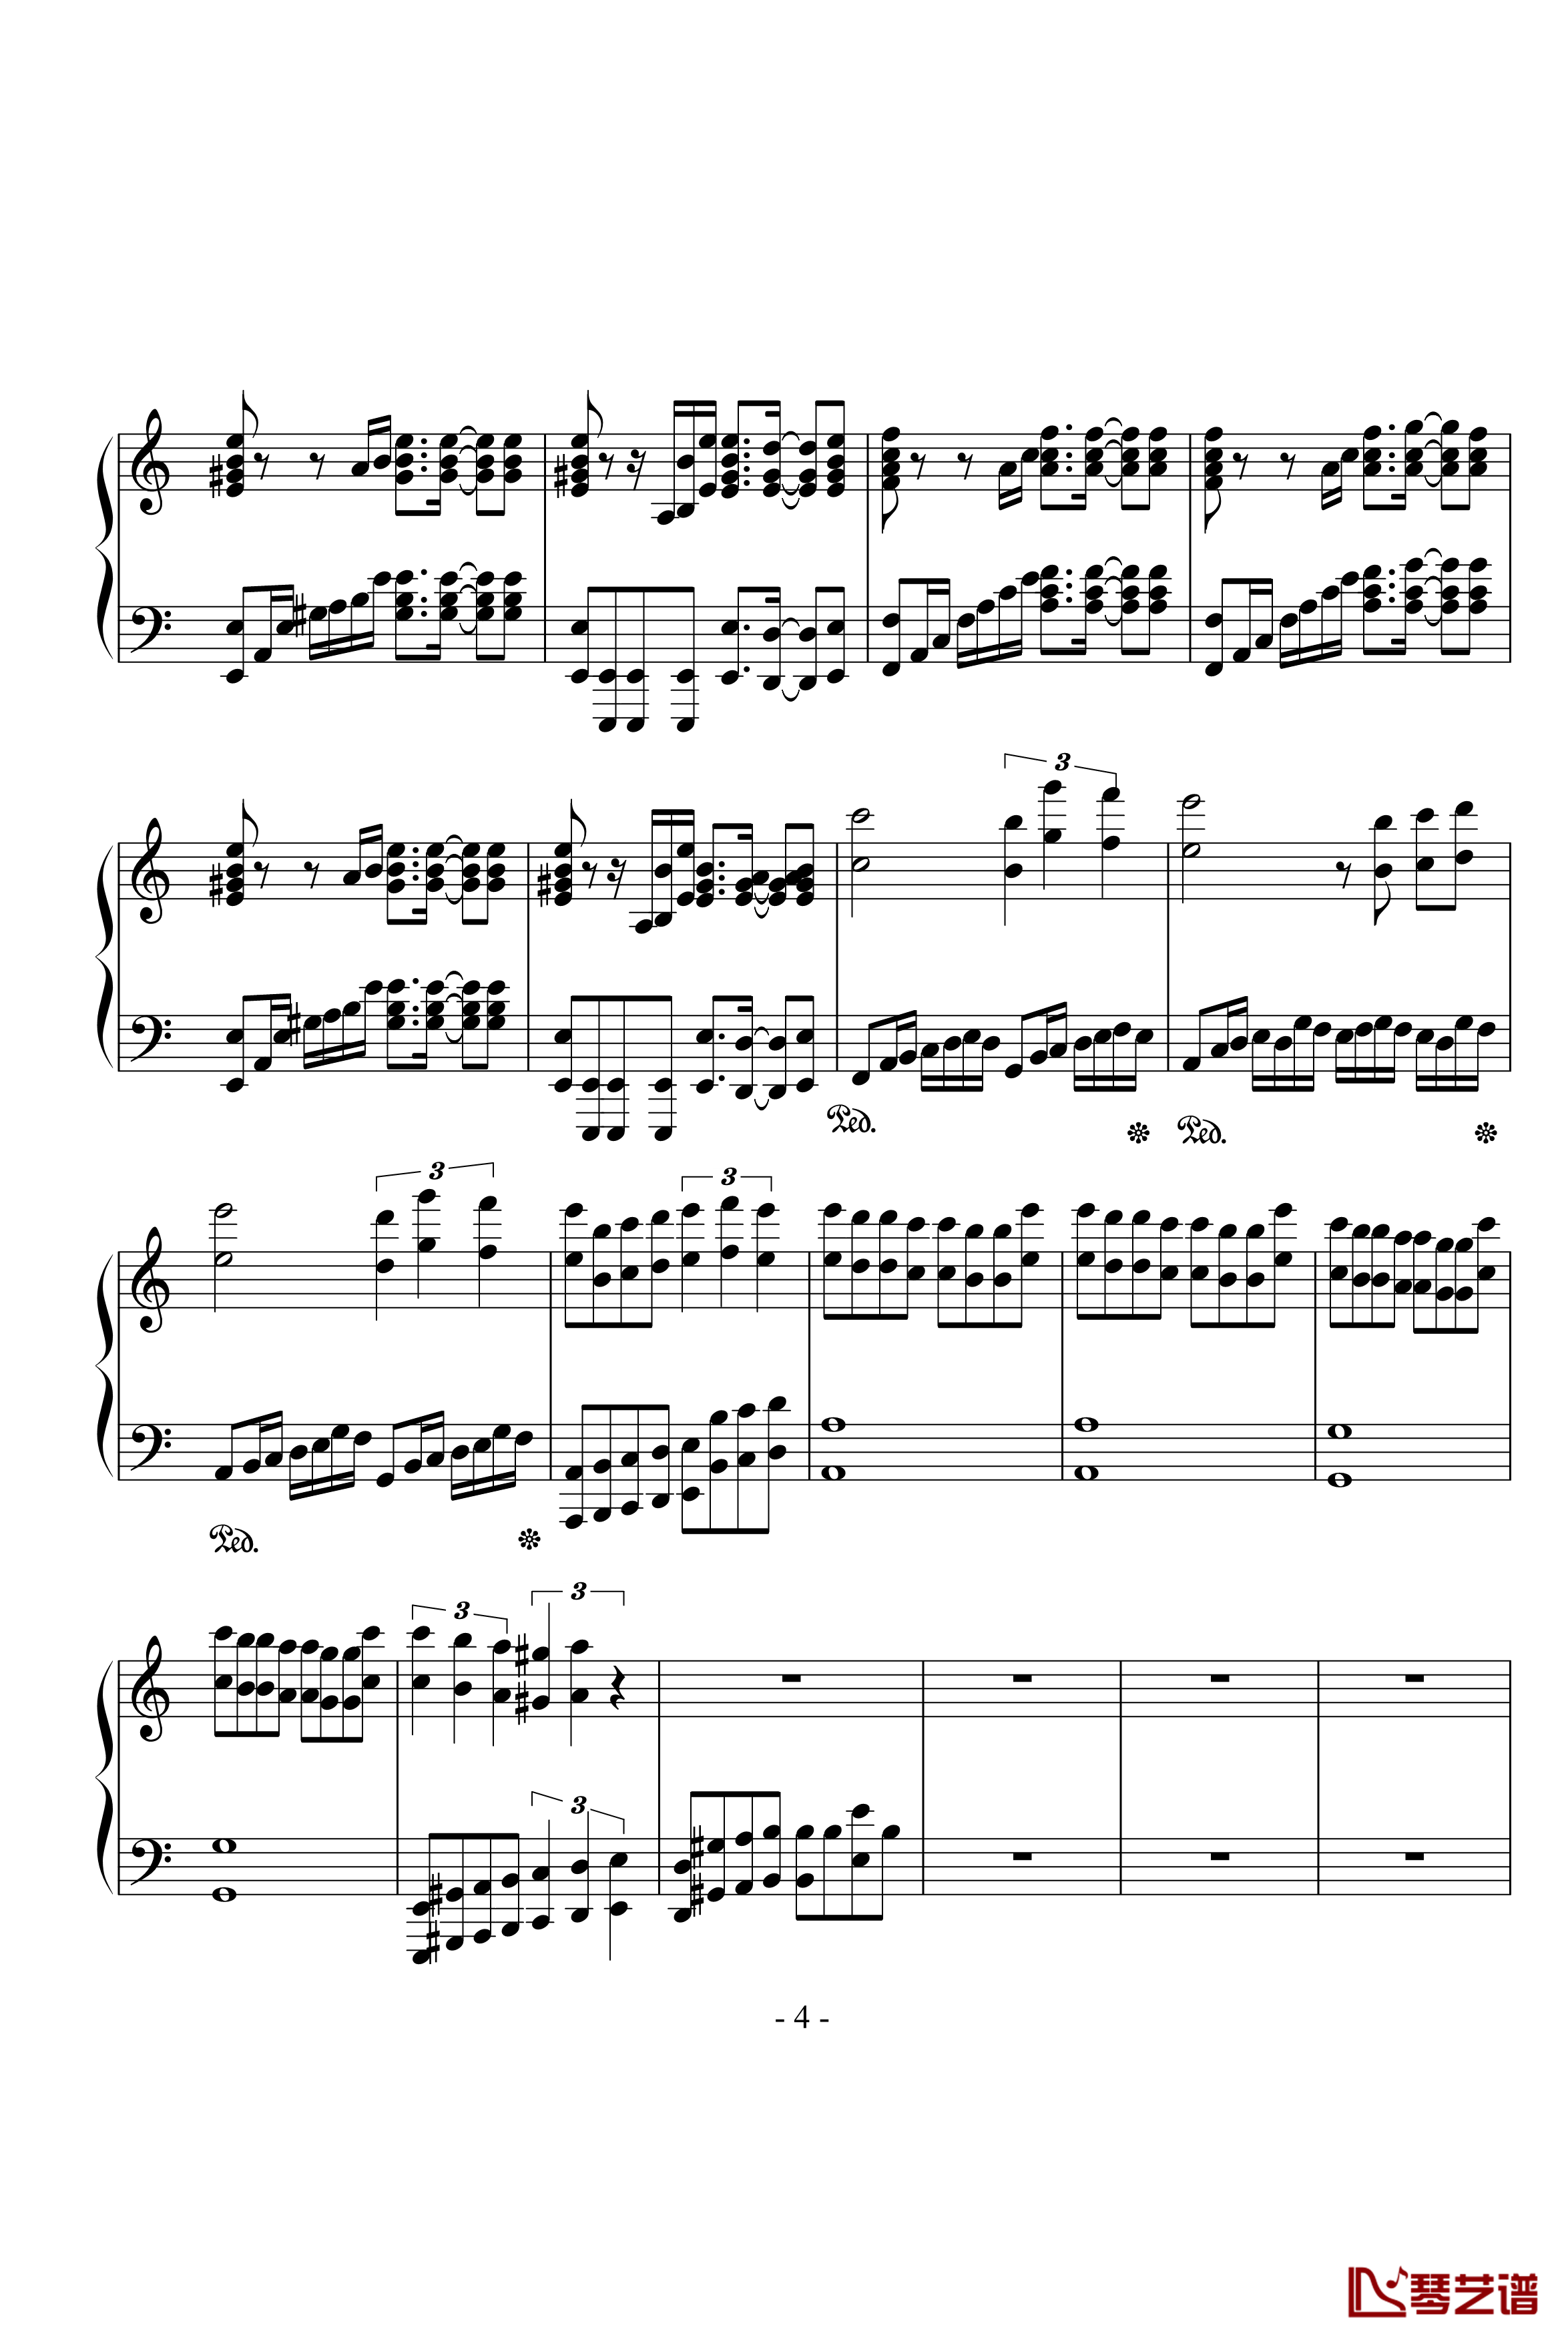 亡灵钢琴钢琴谱-不完整版本-影视4